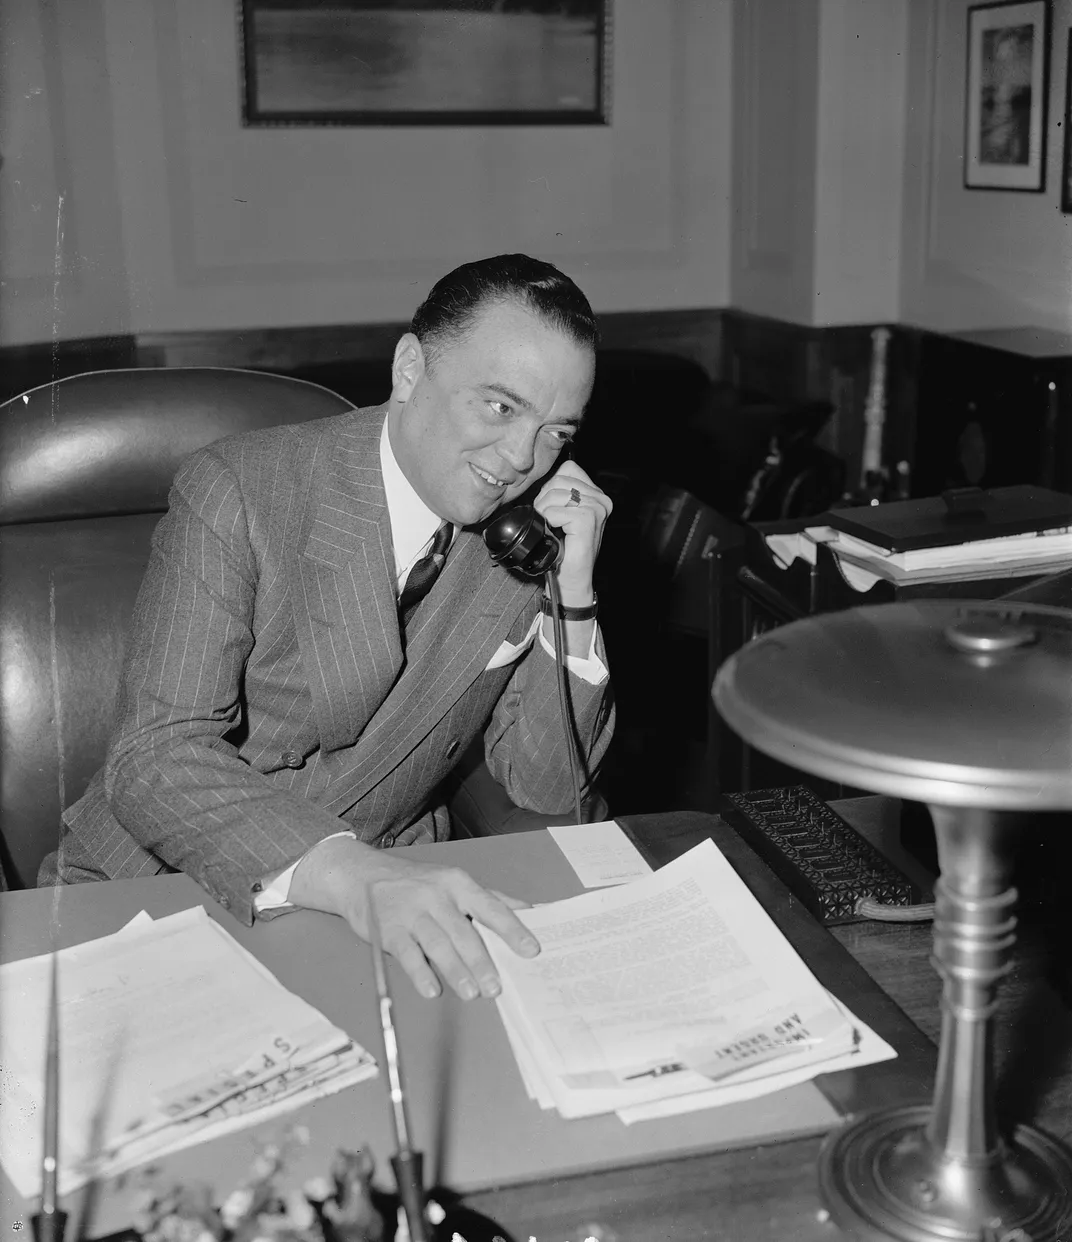 J. Edgar Hoover in 1940